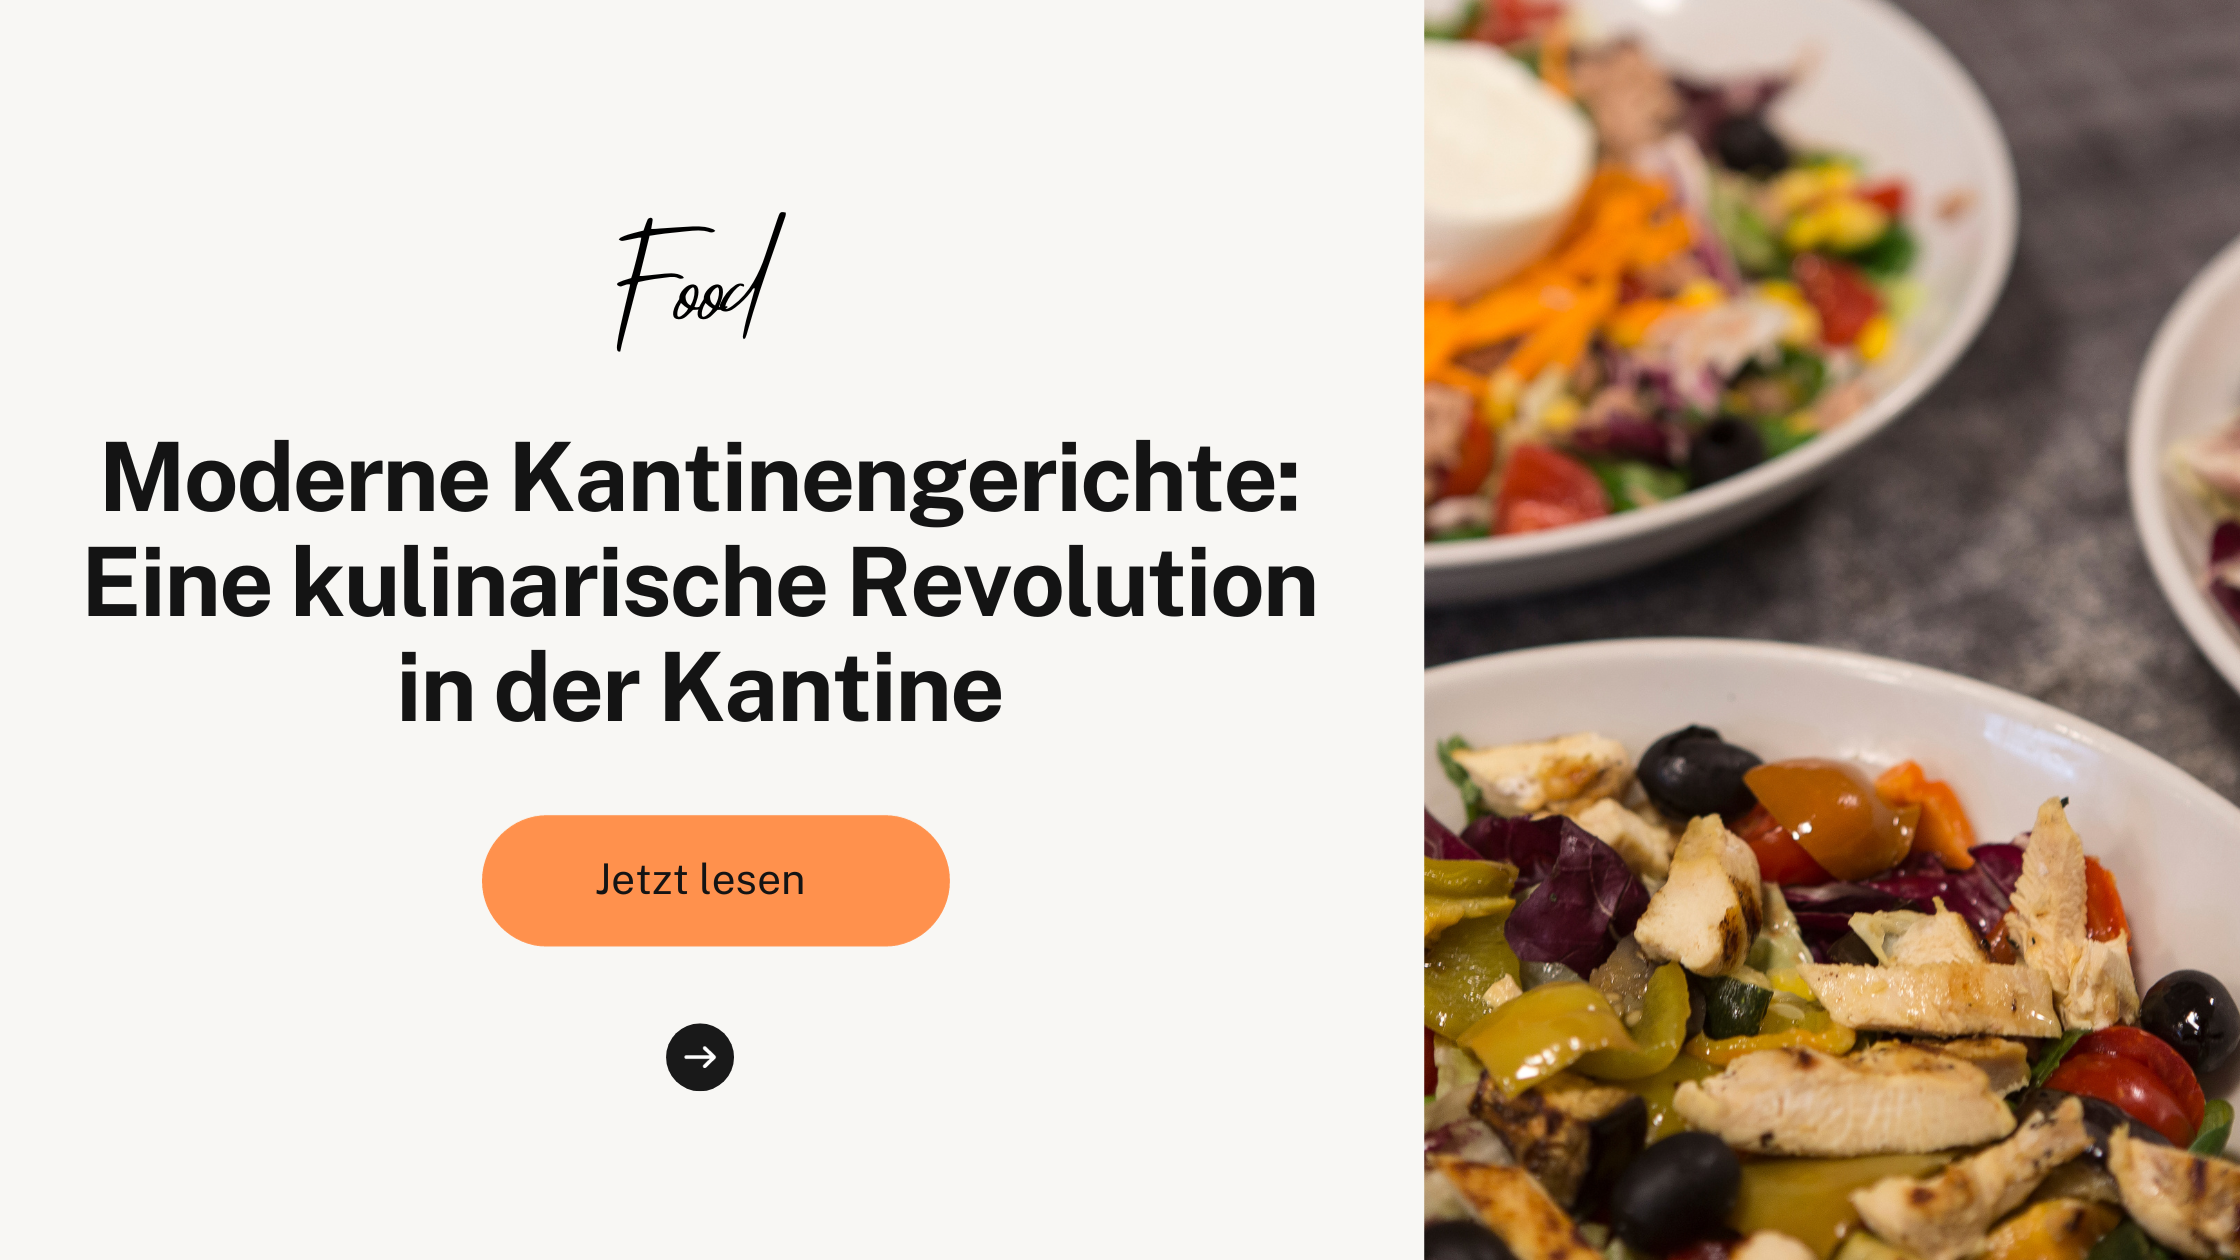 Moderne Kantinengerichte: Eine kulinarische Revolution in der Kantine